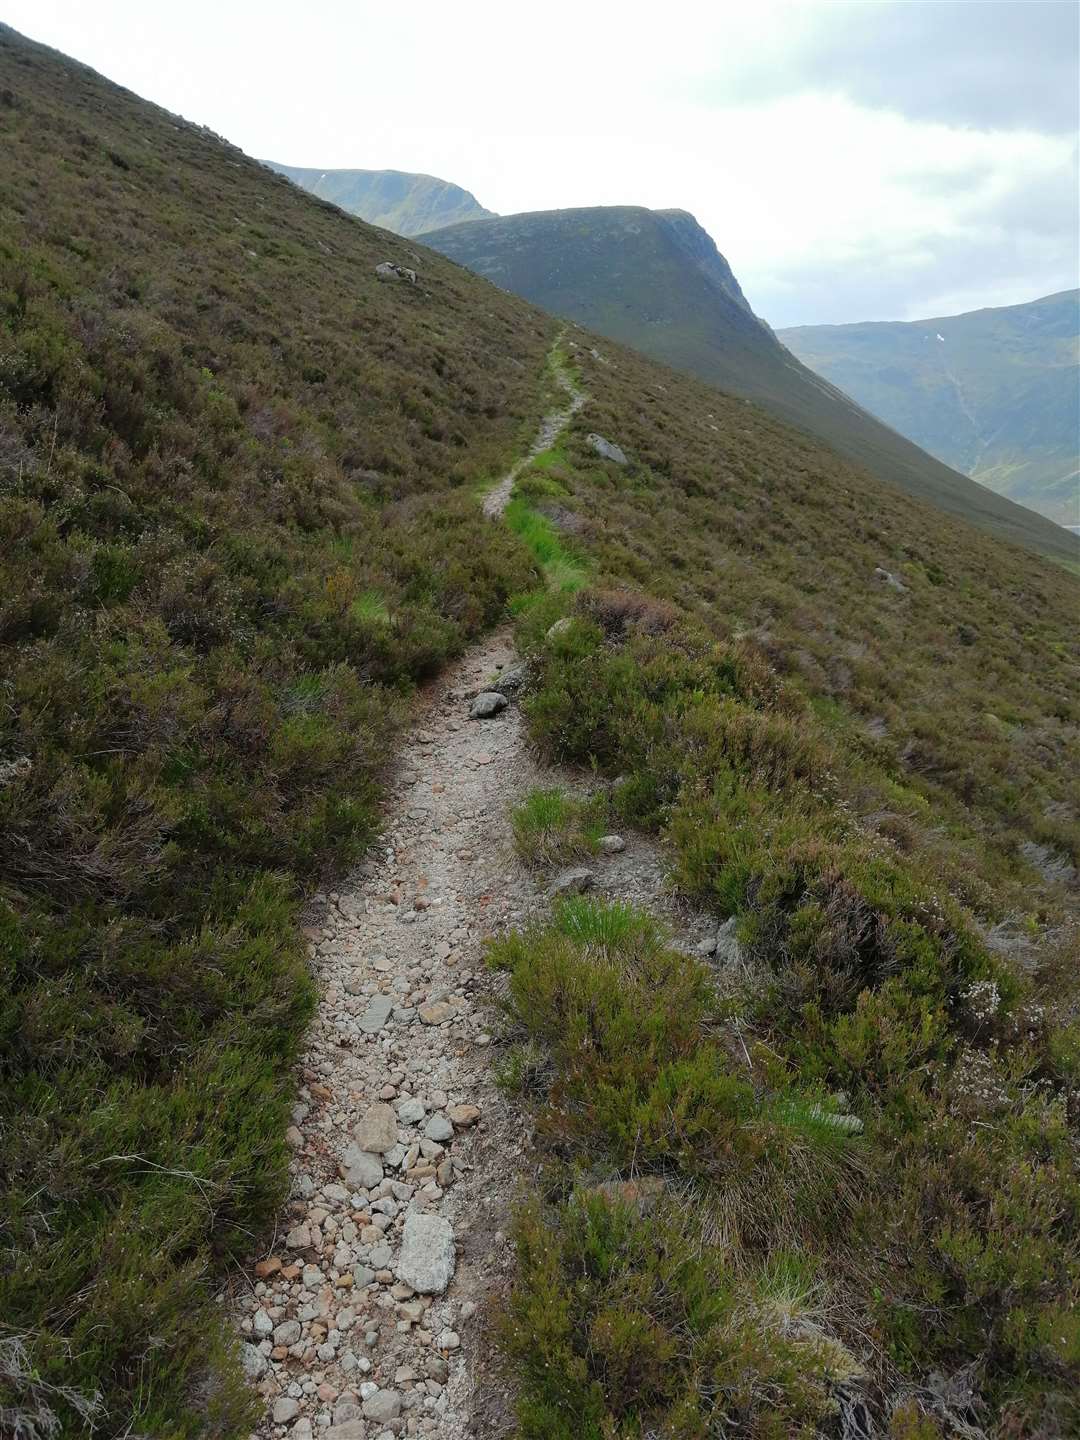 Start of path uphill from Loch Einich.